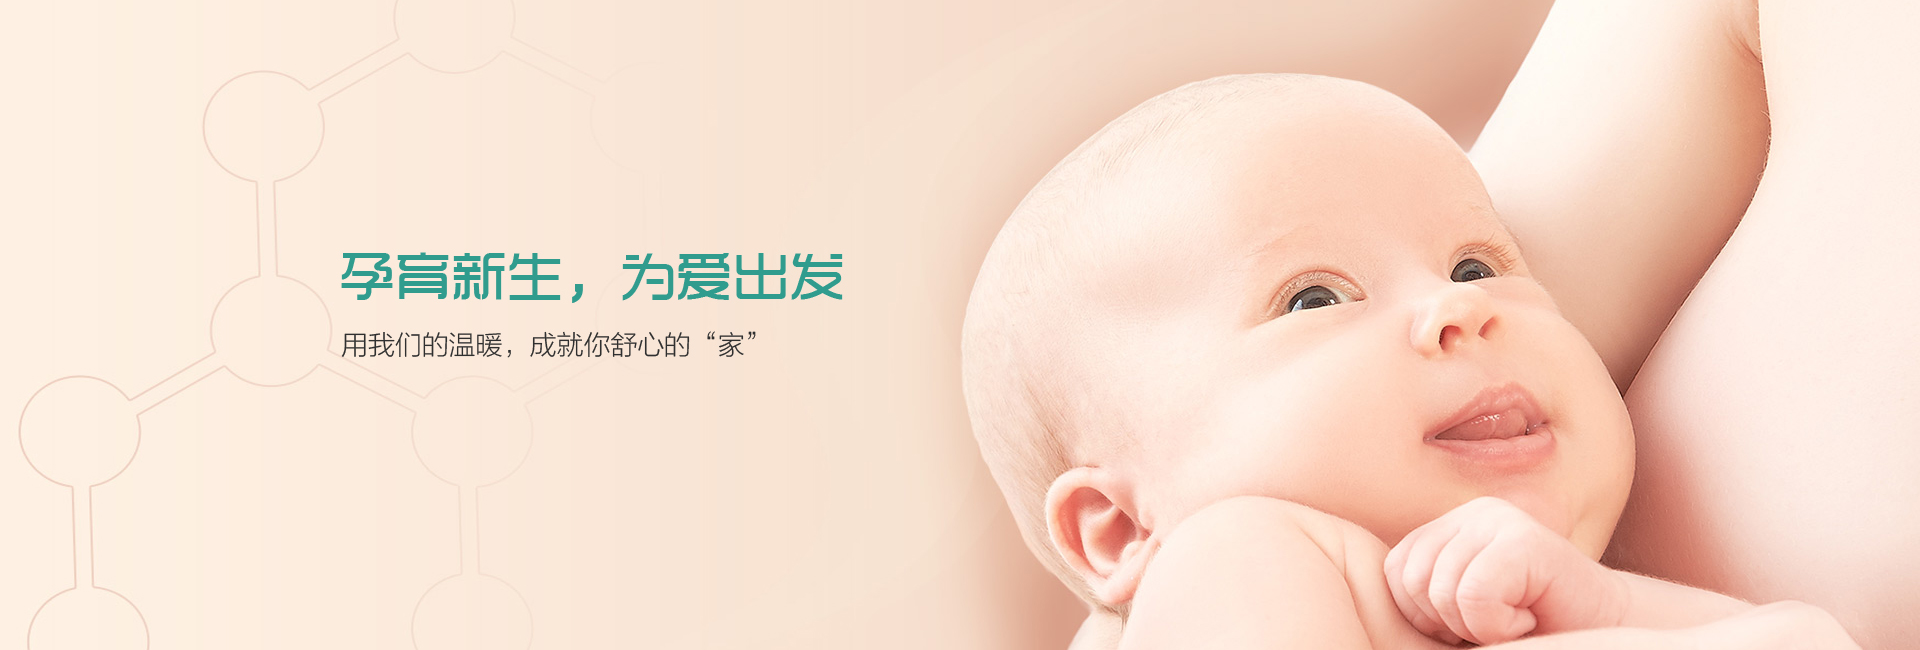 上海代孕公司-上海代孕机构/上海代孕价格/上海代孕医院/上海借腹生子/上海第三代试管婴儿/上海捐卵代孕/上海代孕生子/上海代